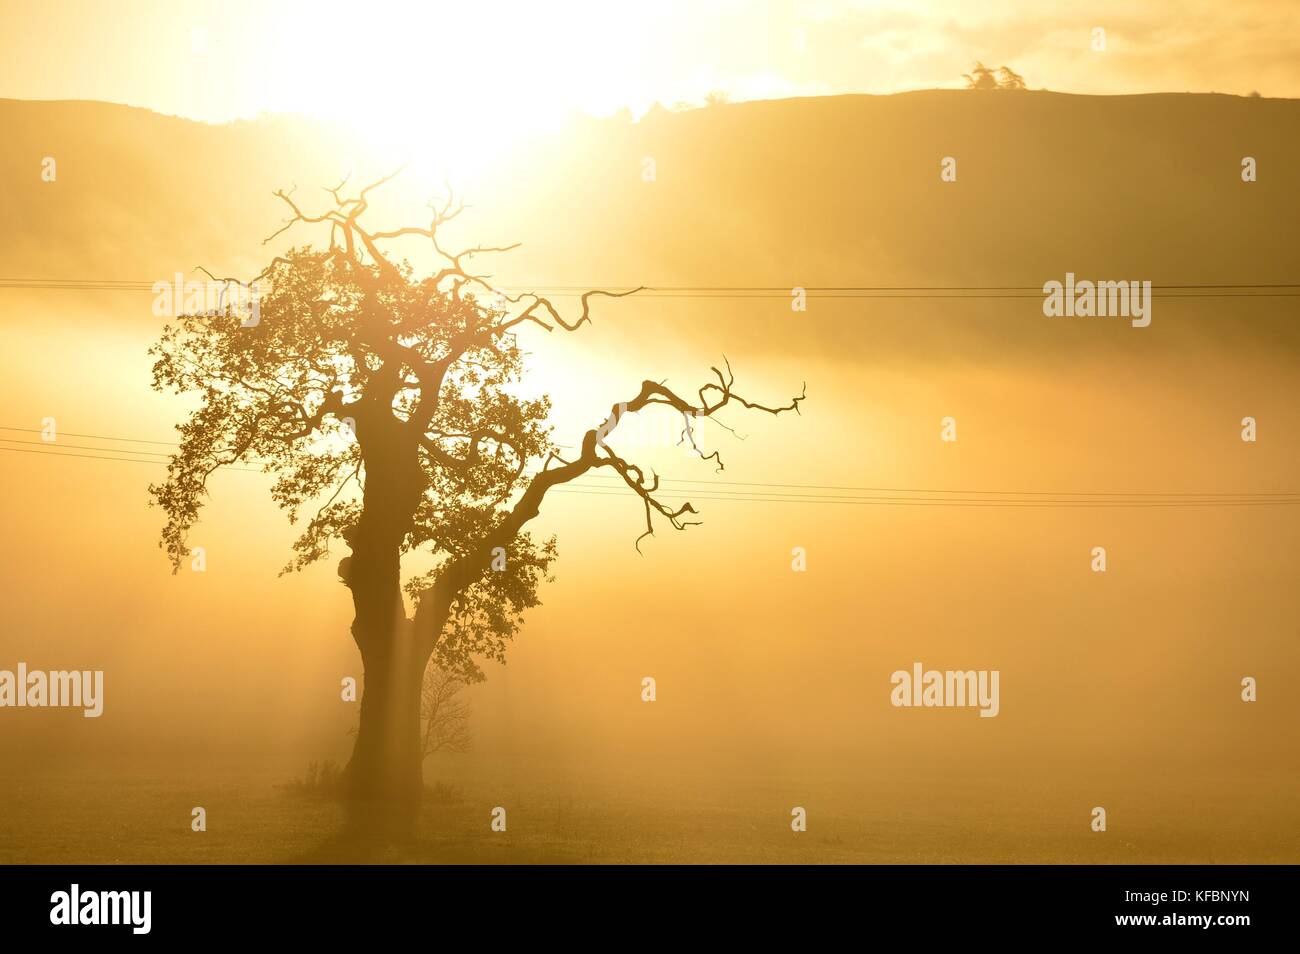 Severn valley Powys, Gales, Reino Unido. viernes 27 oct 2017 El clima del Reino Unido: un glorioso sol sobre un árbol solitario en una mañana brumosa en el severn Valley, justo fuera de Newtown en Powys, Gales crédito: Keith morris/alamy live news Foto de stock